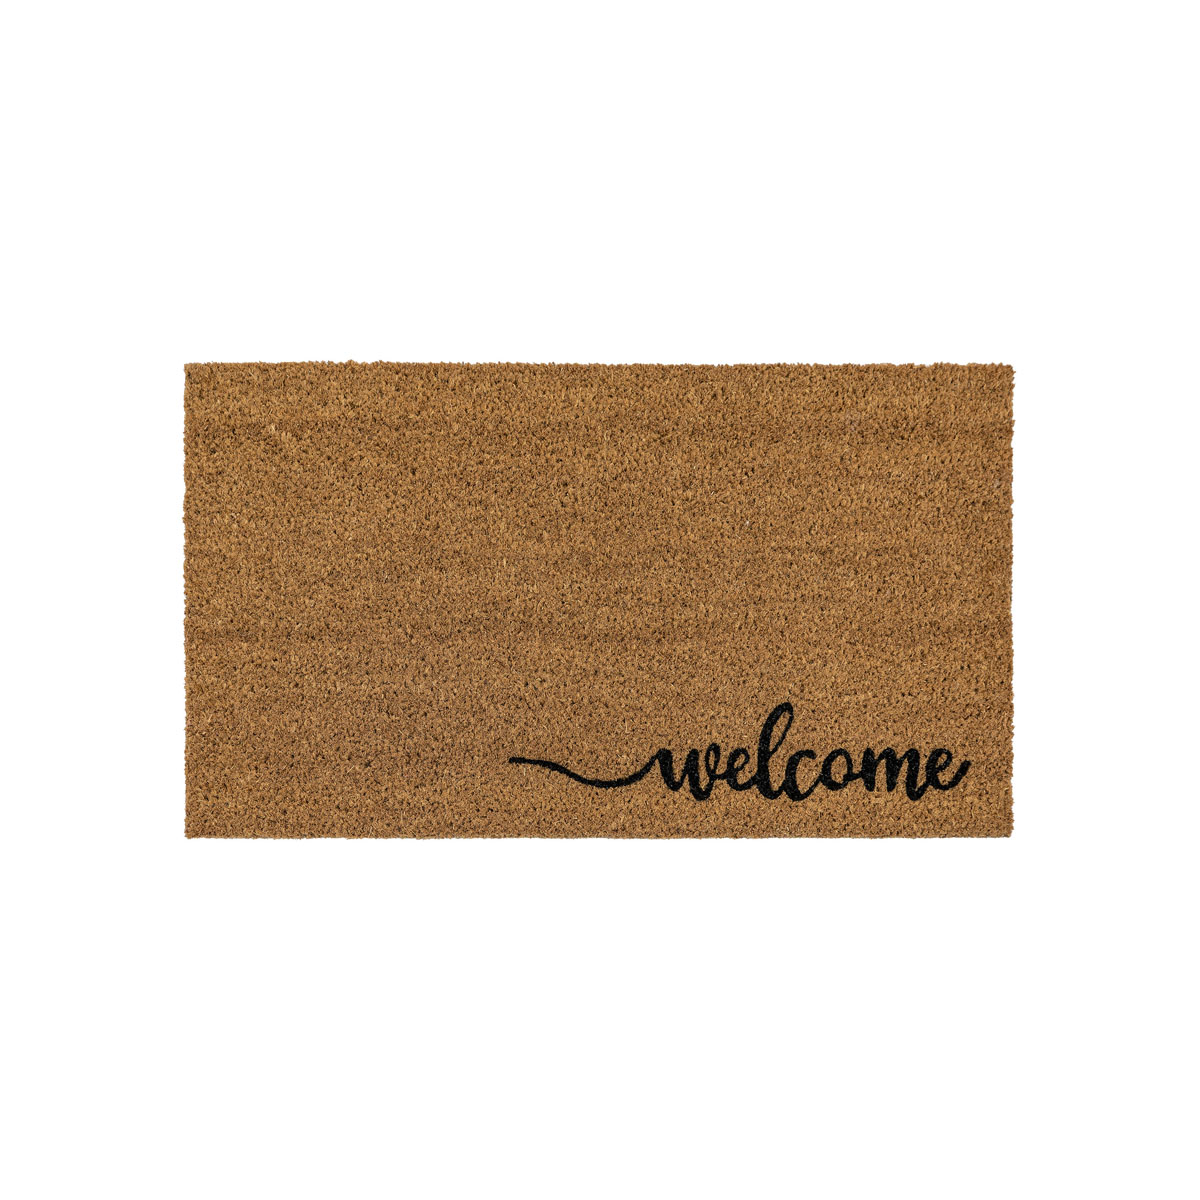 Welcome Coir Doormat 400x700mm